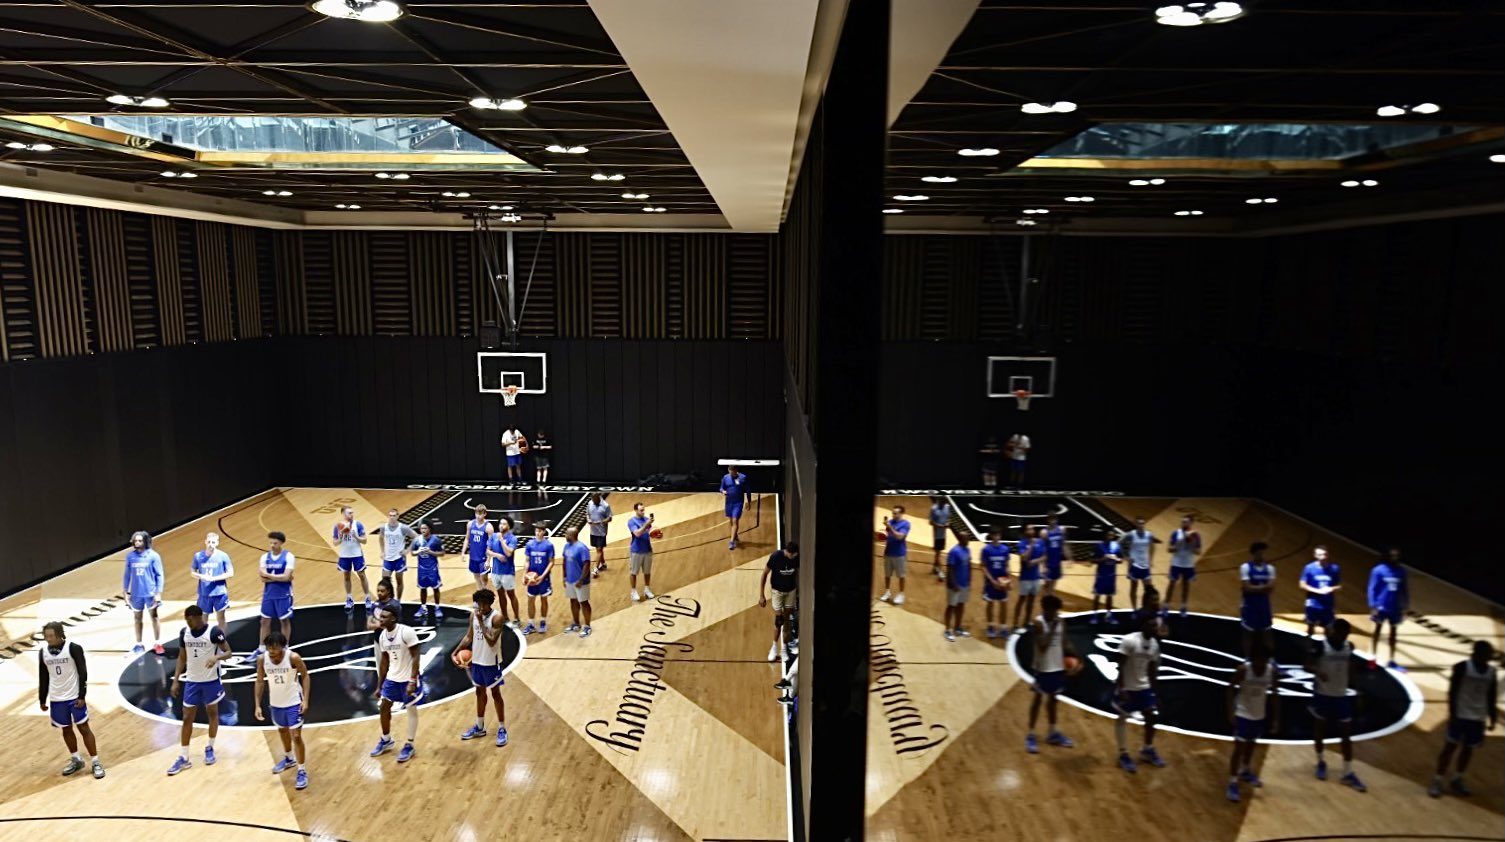 Kentucky Basketball practicing at Drake mansion.